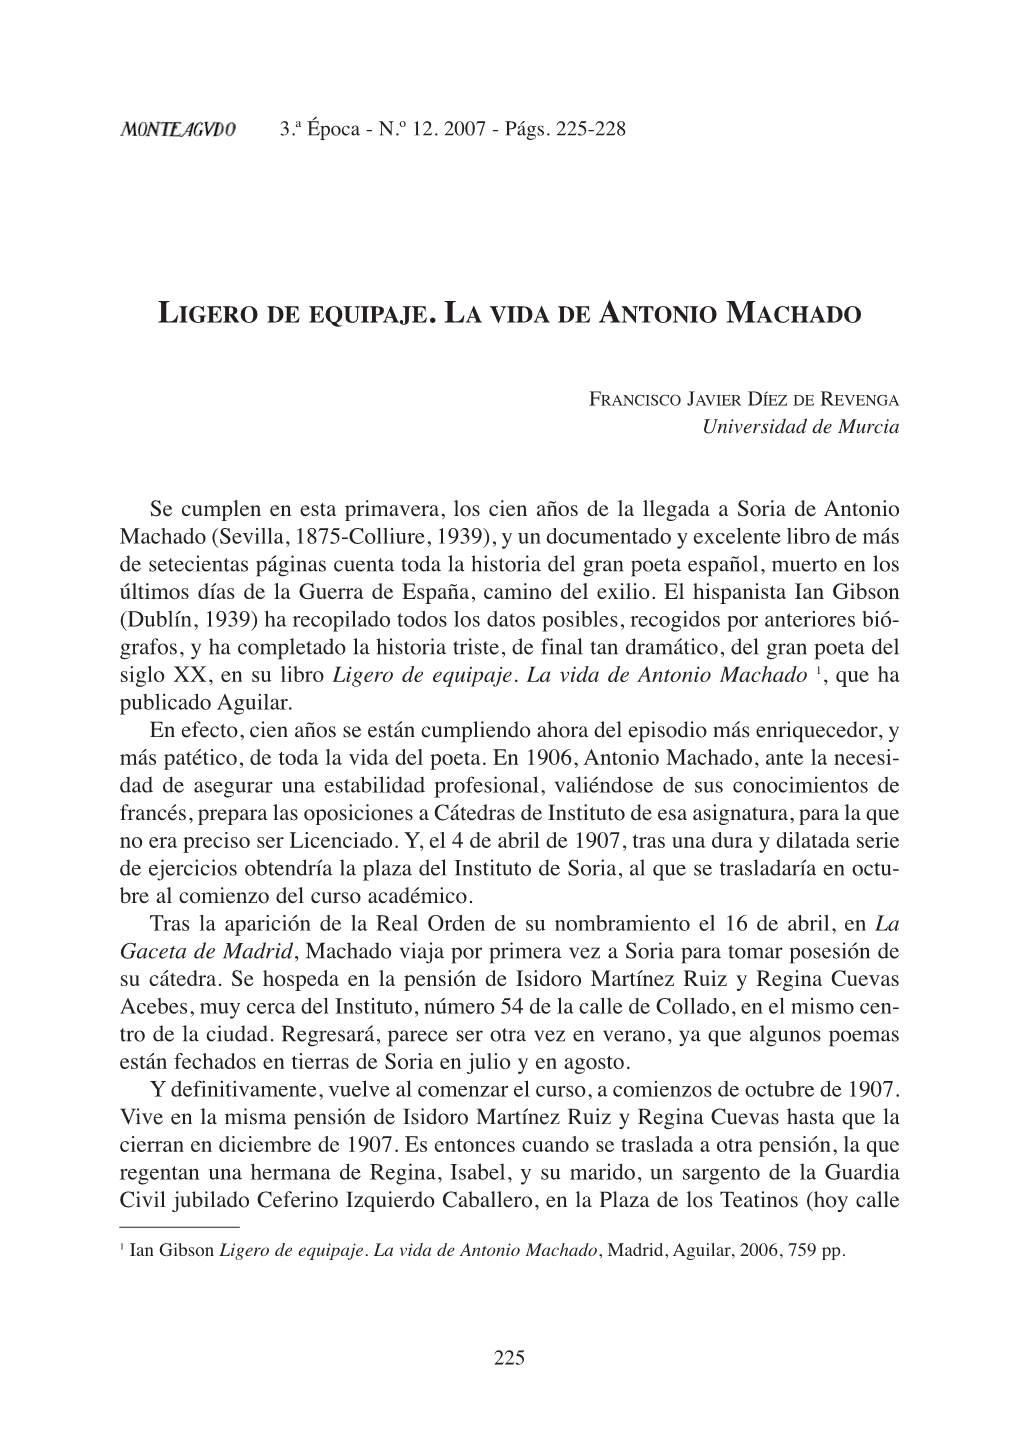 Ligero De Equipaje. La Vida De Antonio Machado 1, Que Ha Publicado Aguilar